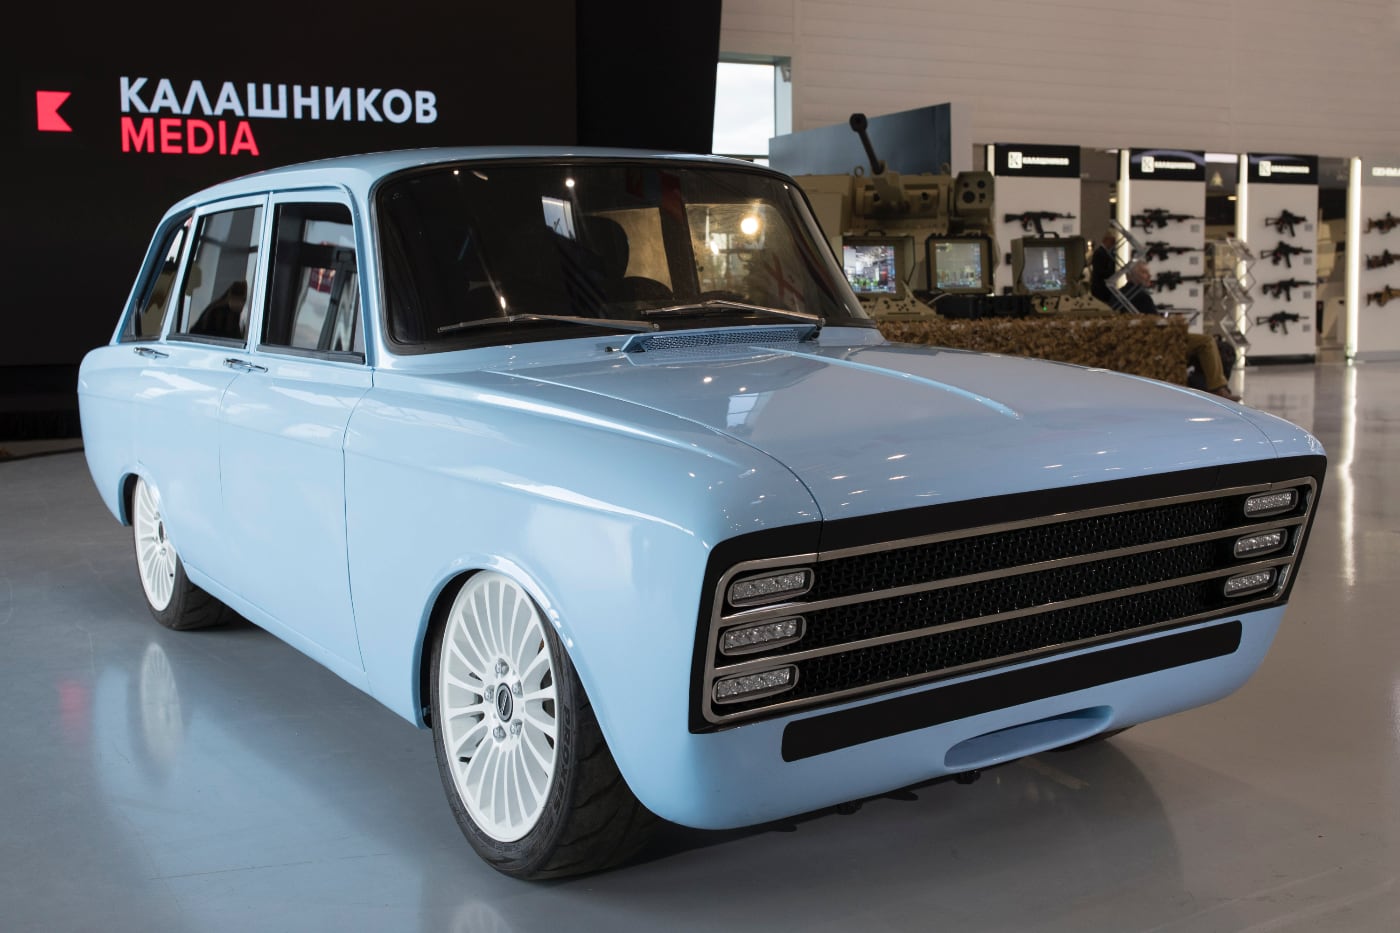 Завод Renault перешел в собственность Москвы. На нём будут выпускаться автомобили под брендом «Москвич»